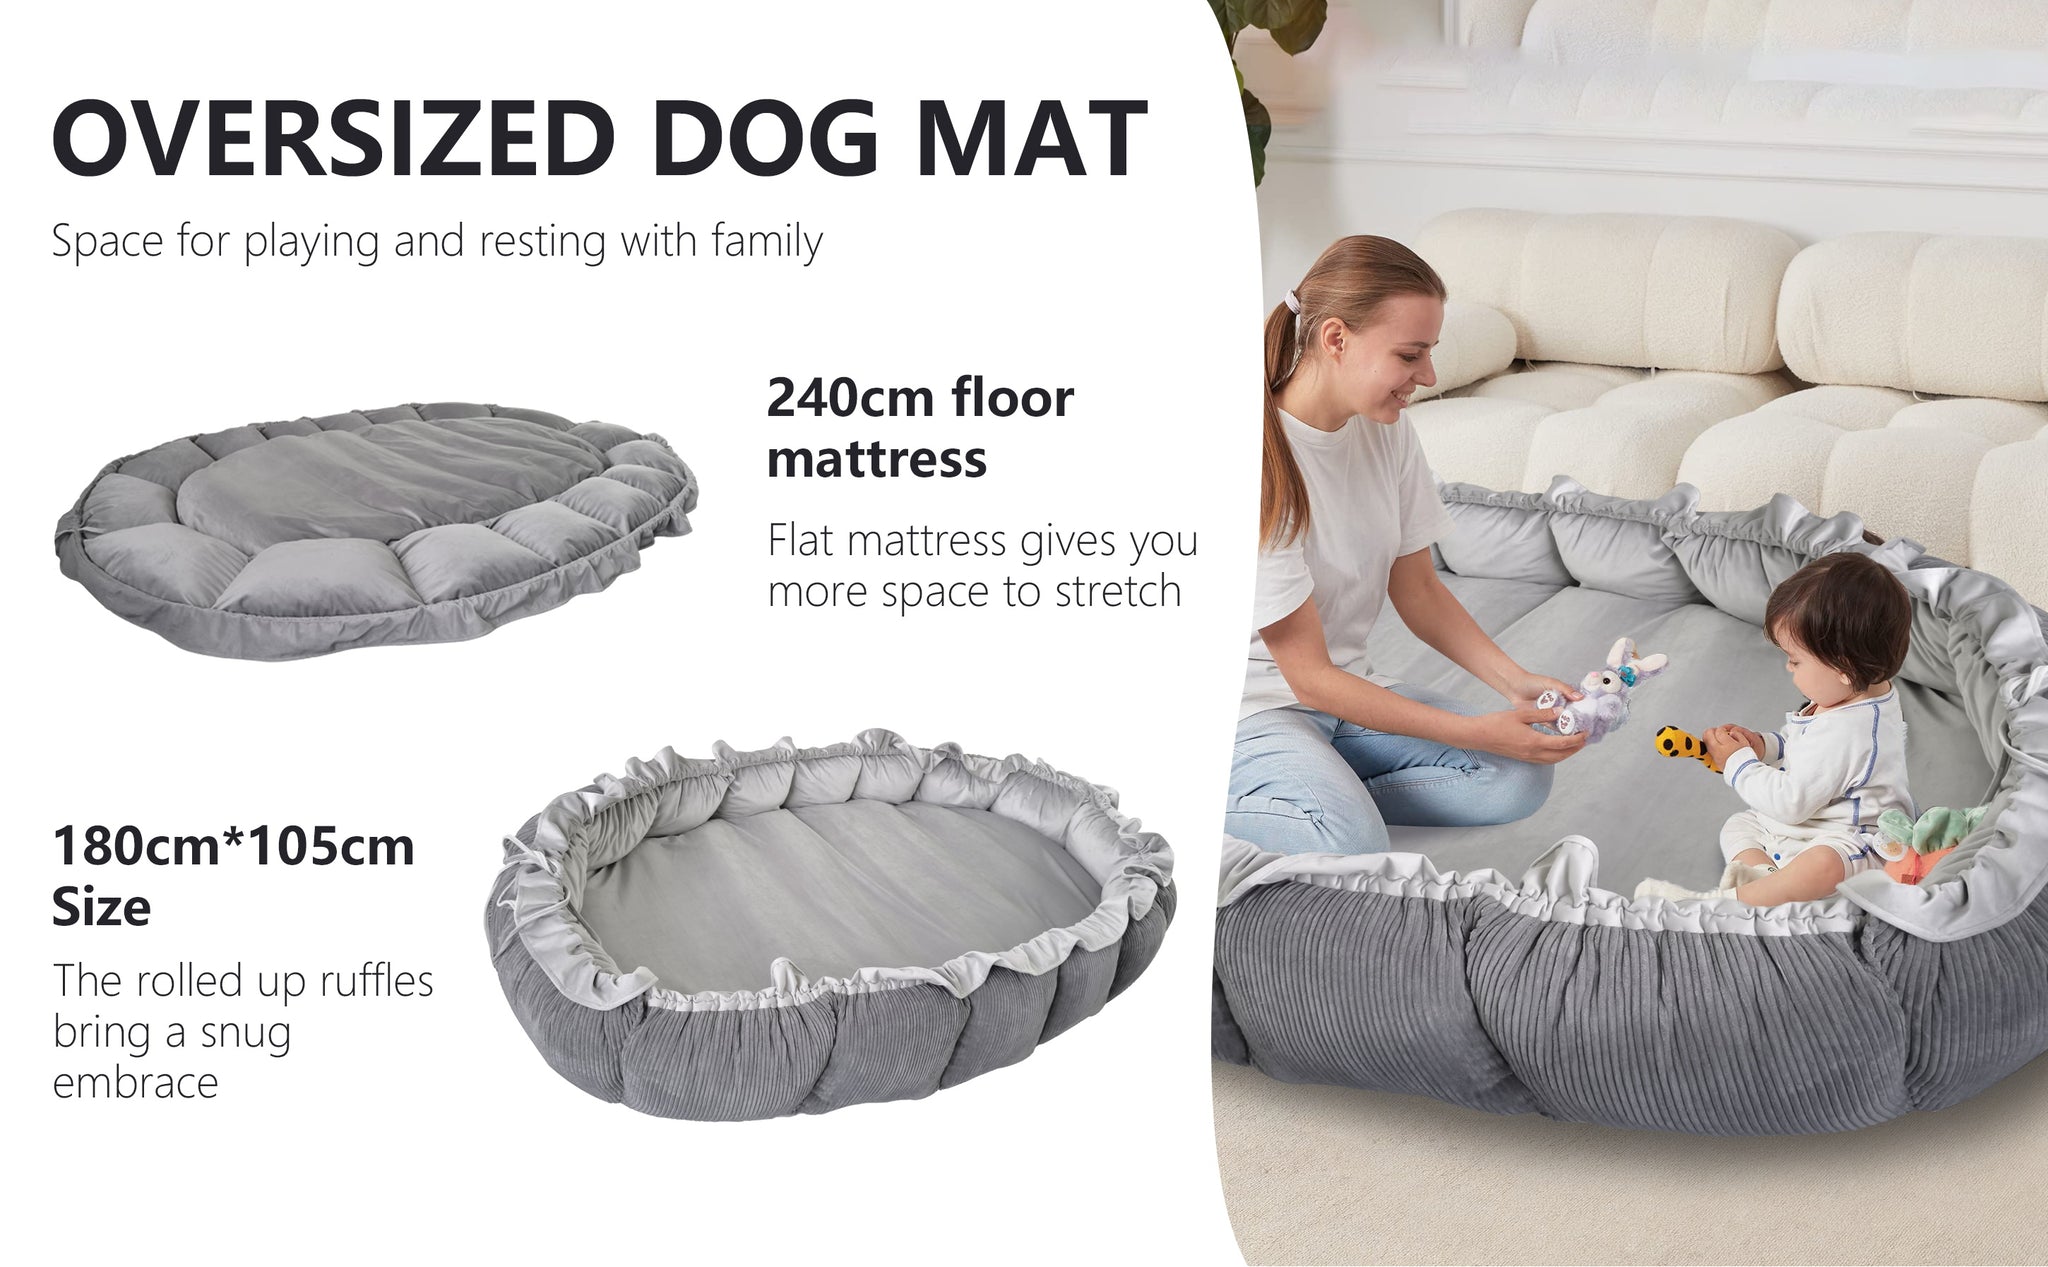 Das Humanoid Dog Bed Futon ist der perfekte Begleiter für Ihren pelzigen Freund. Er ist bis zu 10 cm dick und misst 94 x 65 Zoll, was ihn zu einem bequemen Platz für auch größere Rassen macht. Darüber hinaus eignet es sich durch sein kinderfreundliches Design für die ganze Familie.